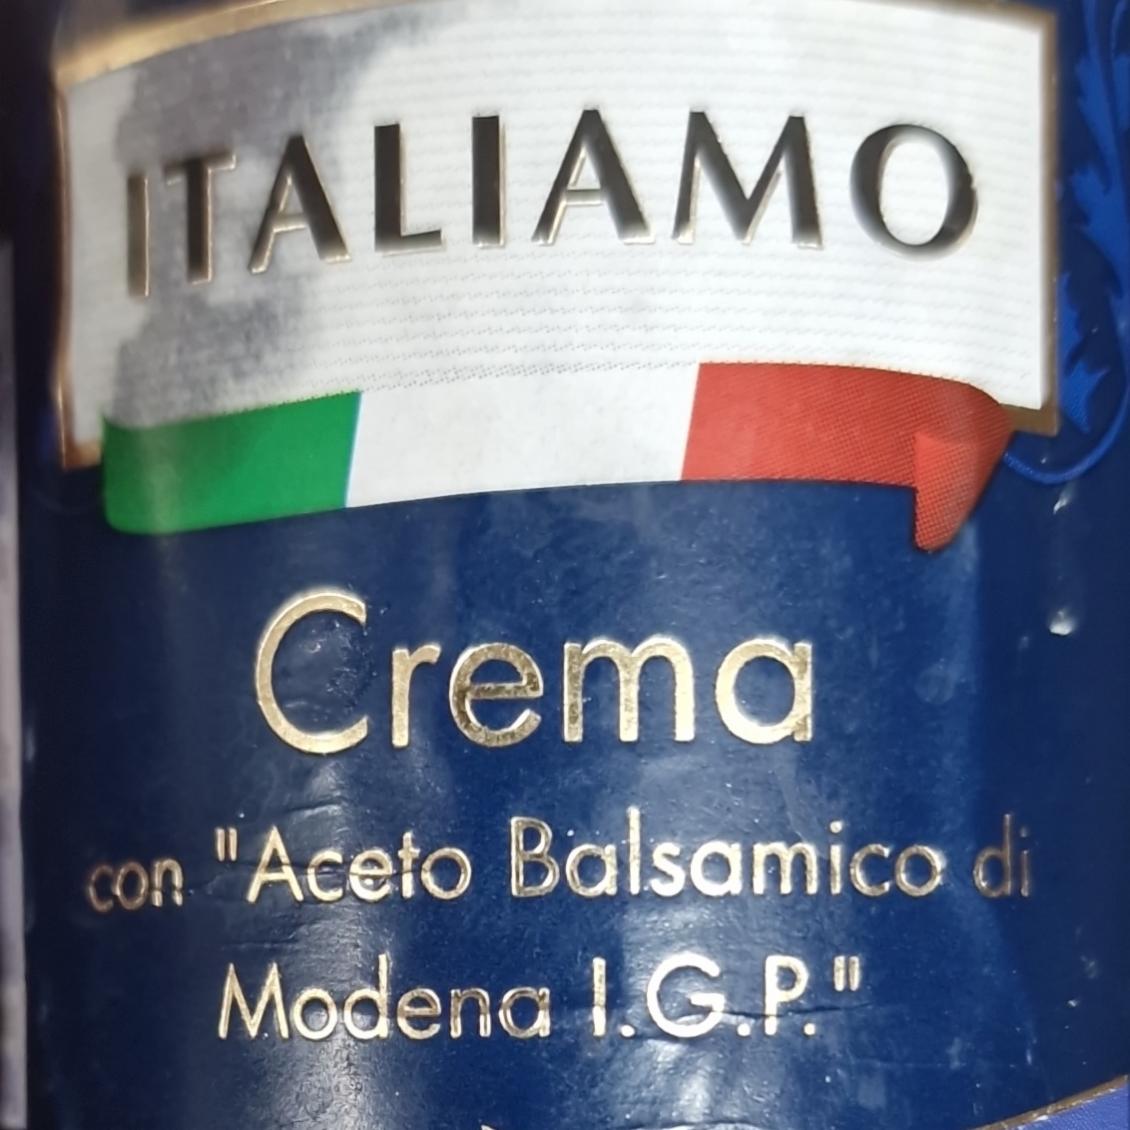 Fotografie - Crema con Aceto Balsamico di Modena IGP Italiamo